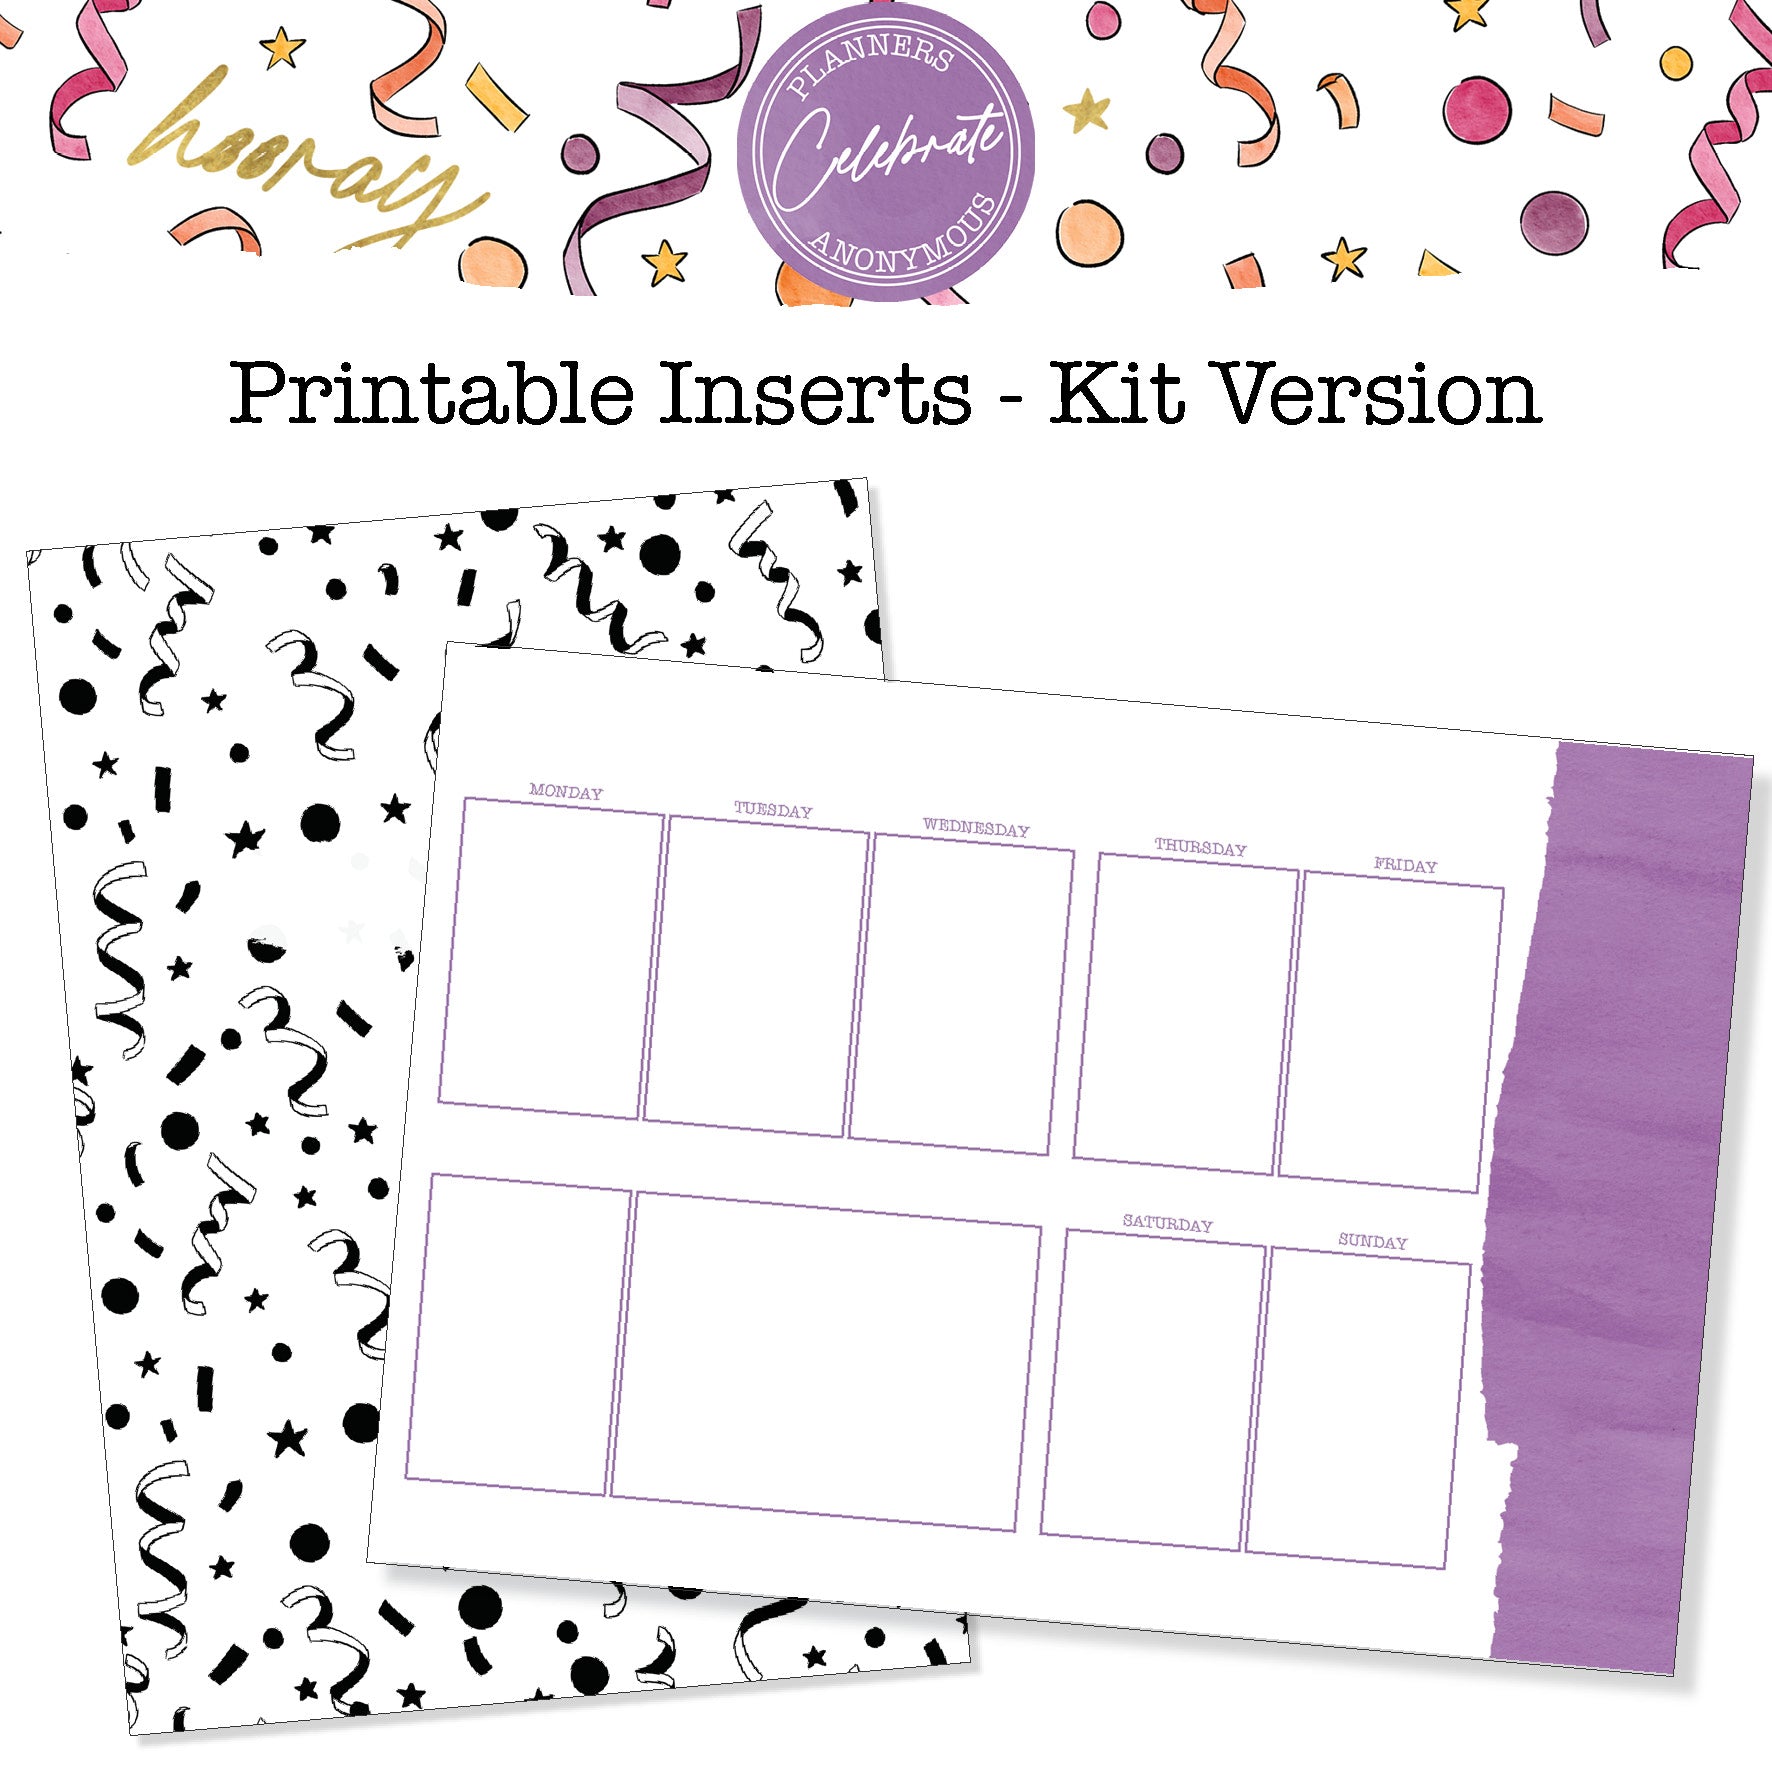 Celebrate - Printable Inserts - Kit